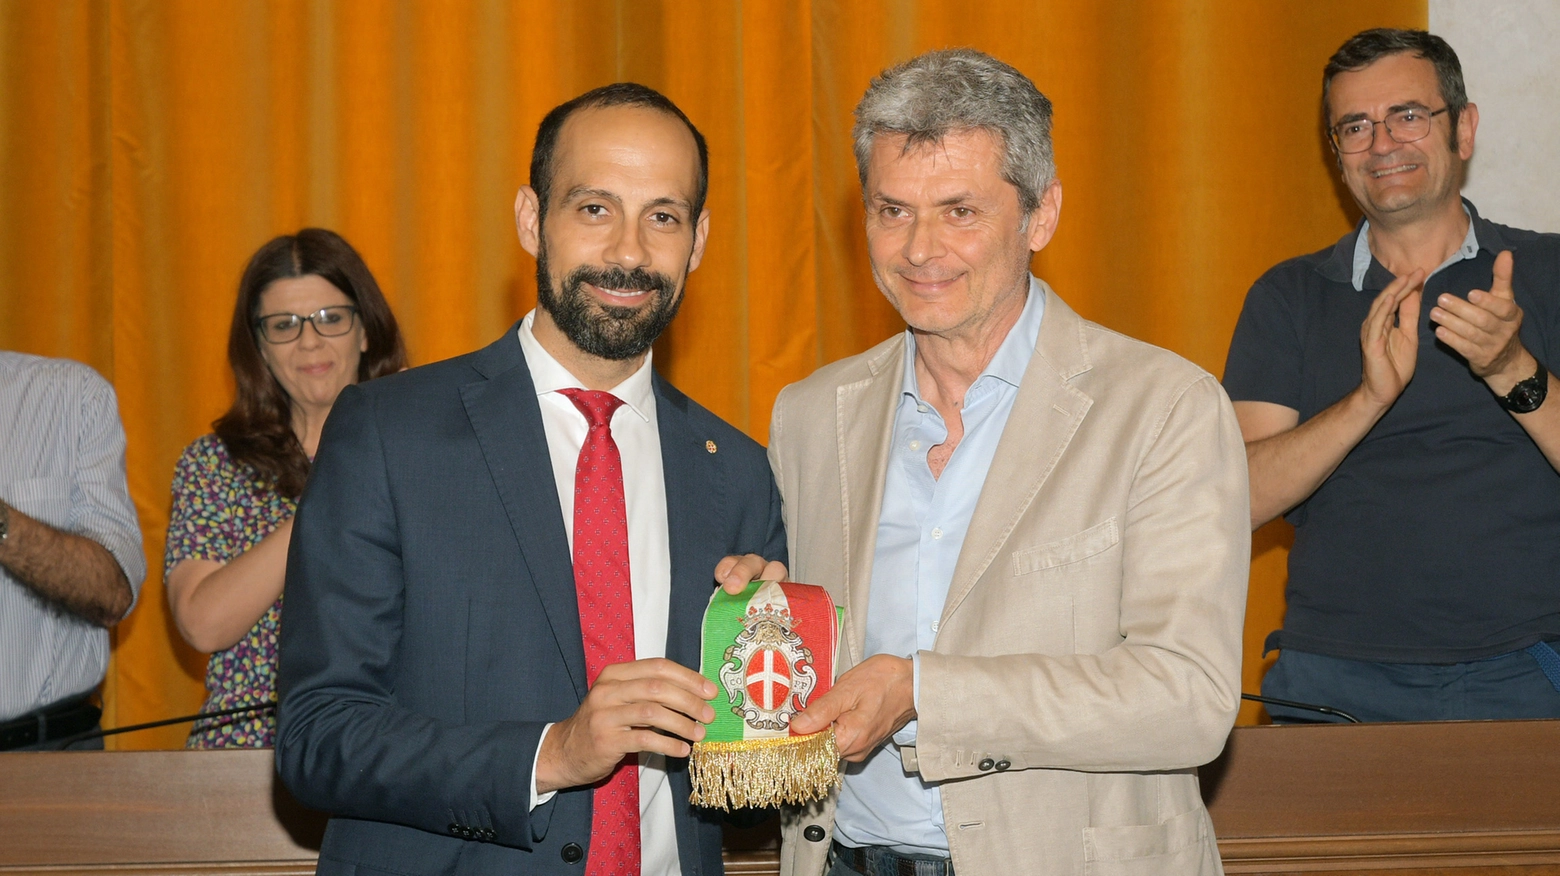 Il passaggio di consegne tra Fabrizio Fracassi (a destra) e il nuovo sindaco di Pavia, Michele Lissia